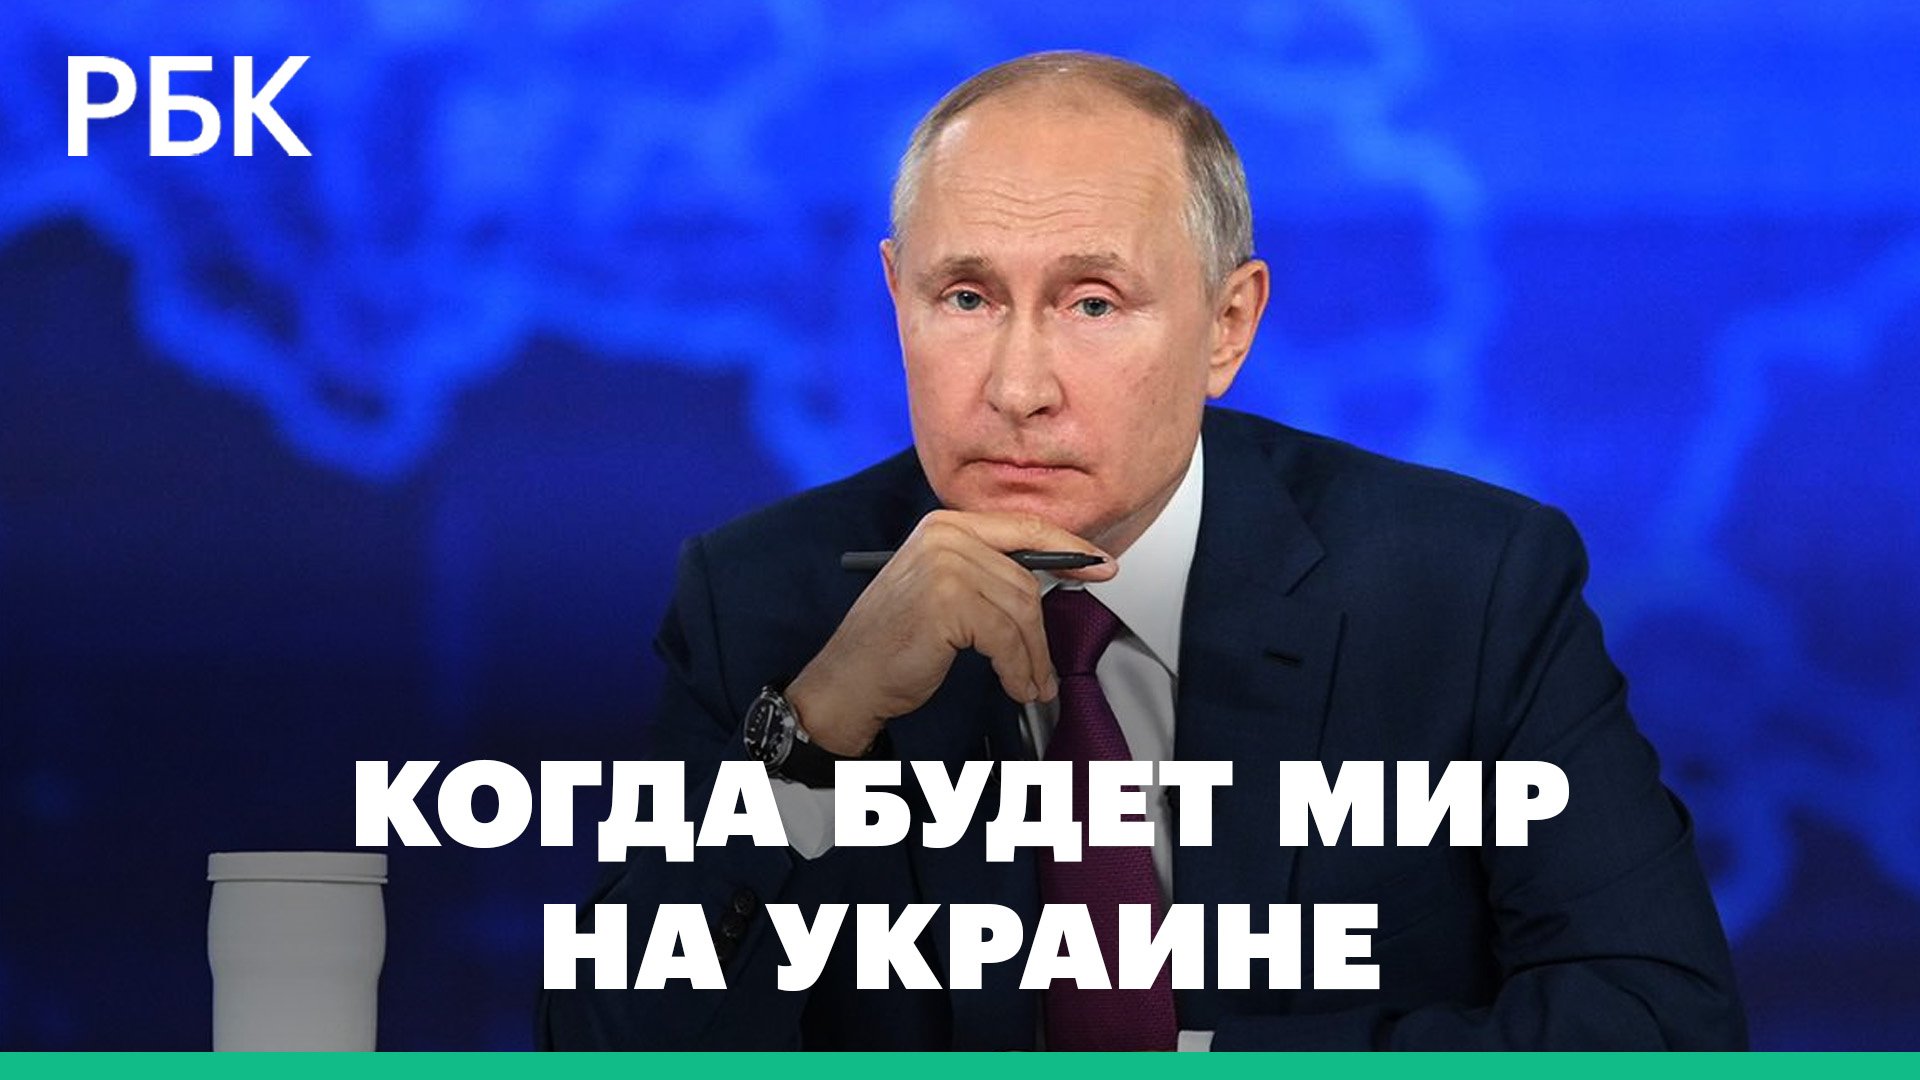 Путин ответил на вопрос, когда будет мир на Украине